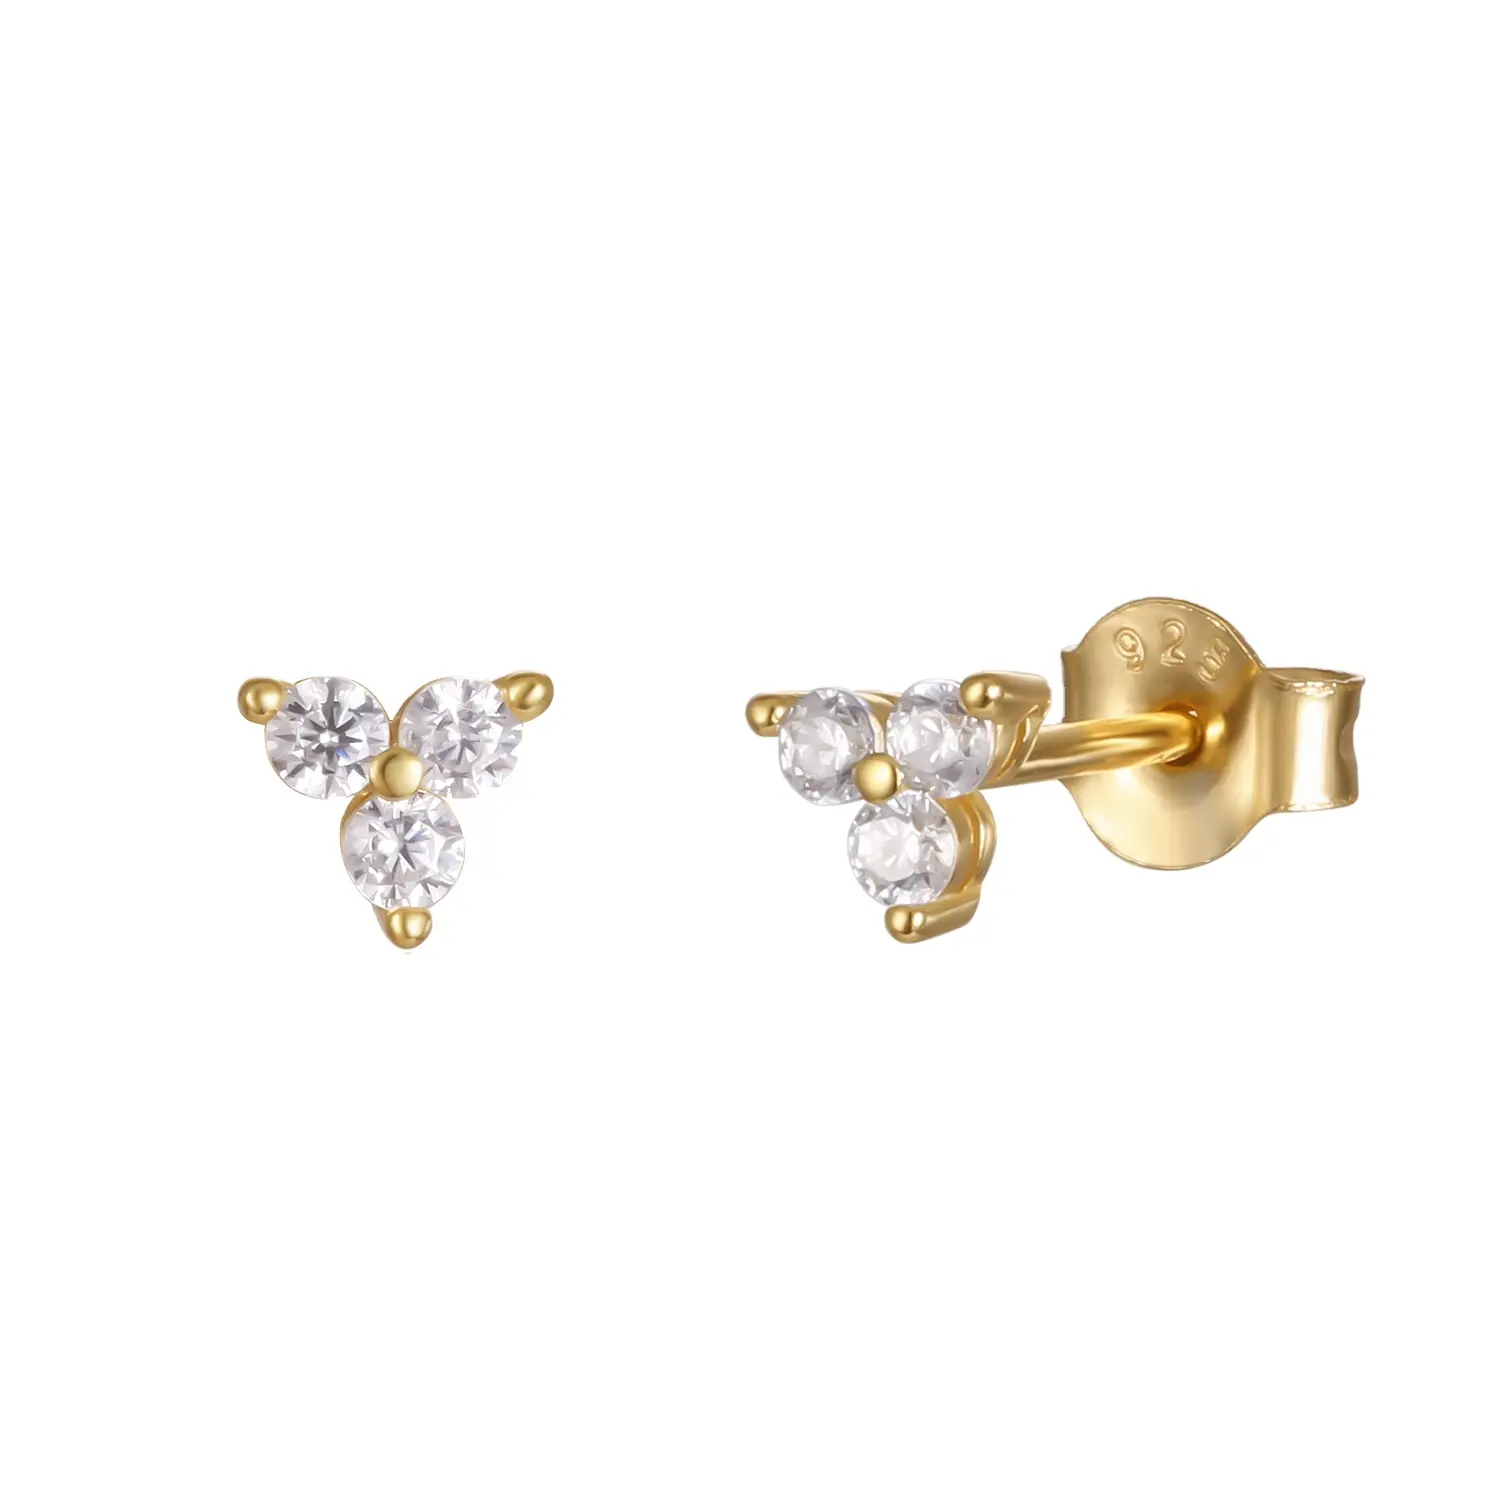 2022 NEW Fashion Earring 925 Sterling Silver minimalist cute flower shape tiny cz cubic zirconia stud earrings for women